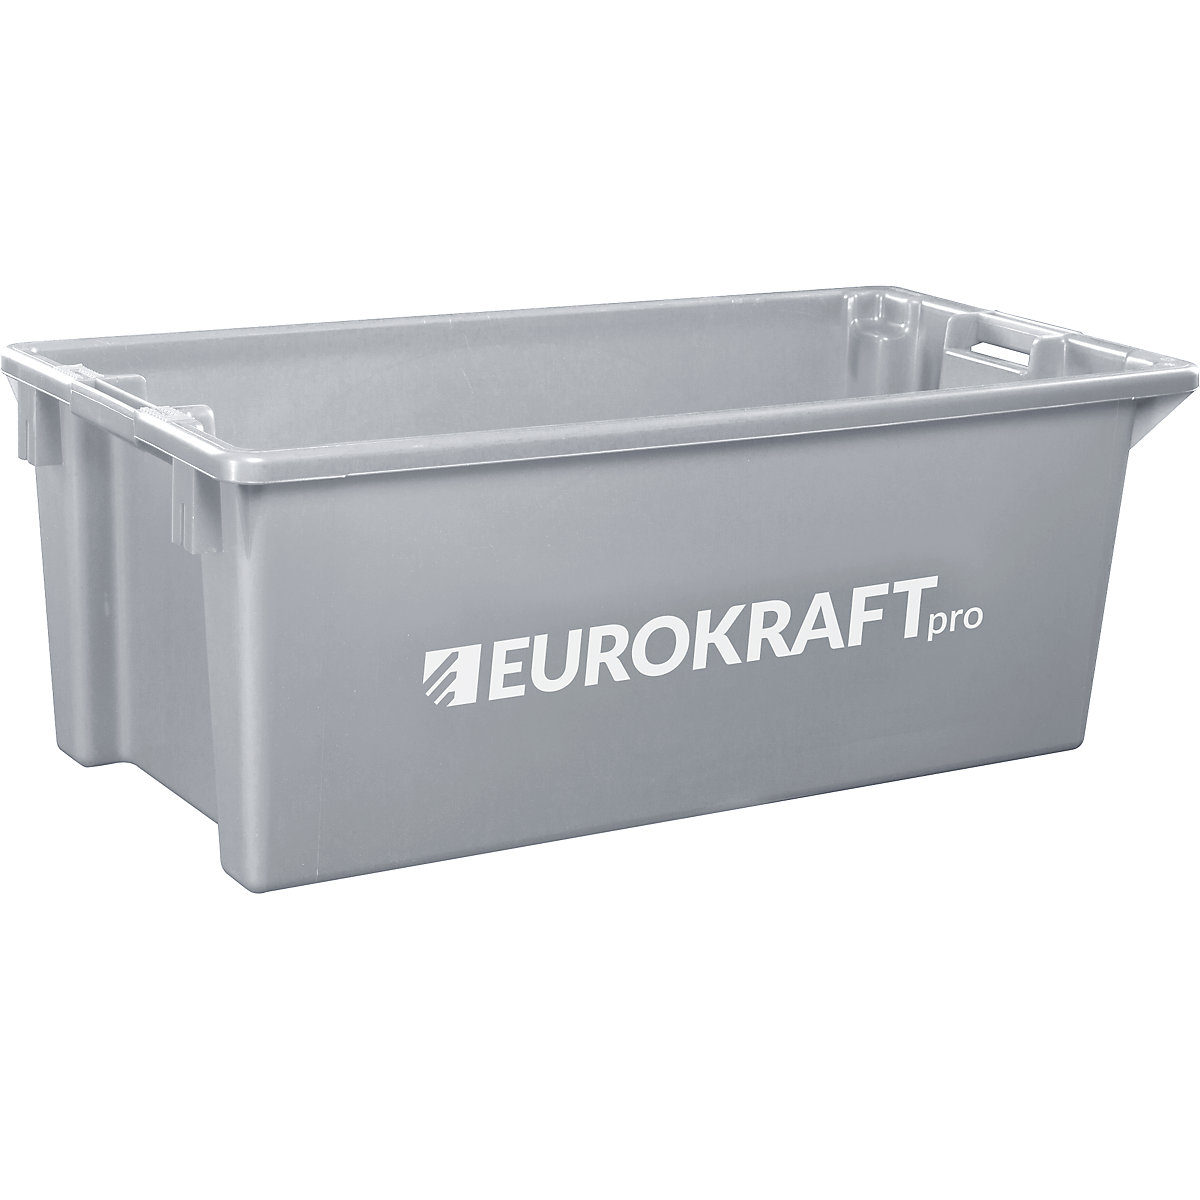 EUROKRAFTpro Drehstapelbehälter aus lebensmittelechtem Polypropylen, Inhalt 13 Liter, VE 4 Stk, Wände und Boden geschlossen, grau